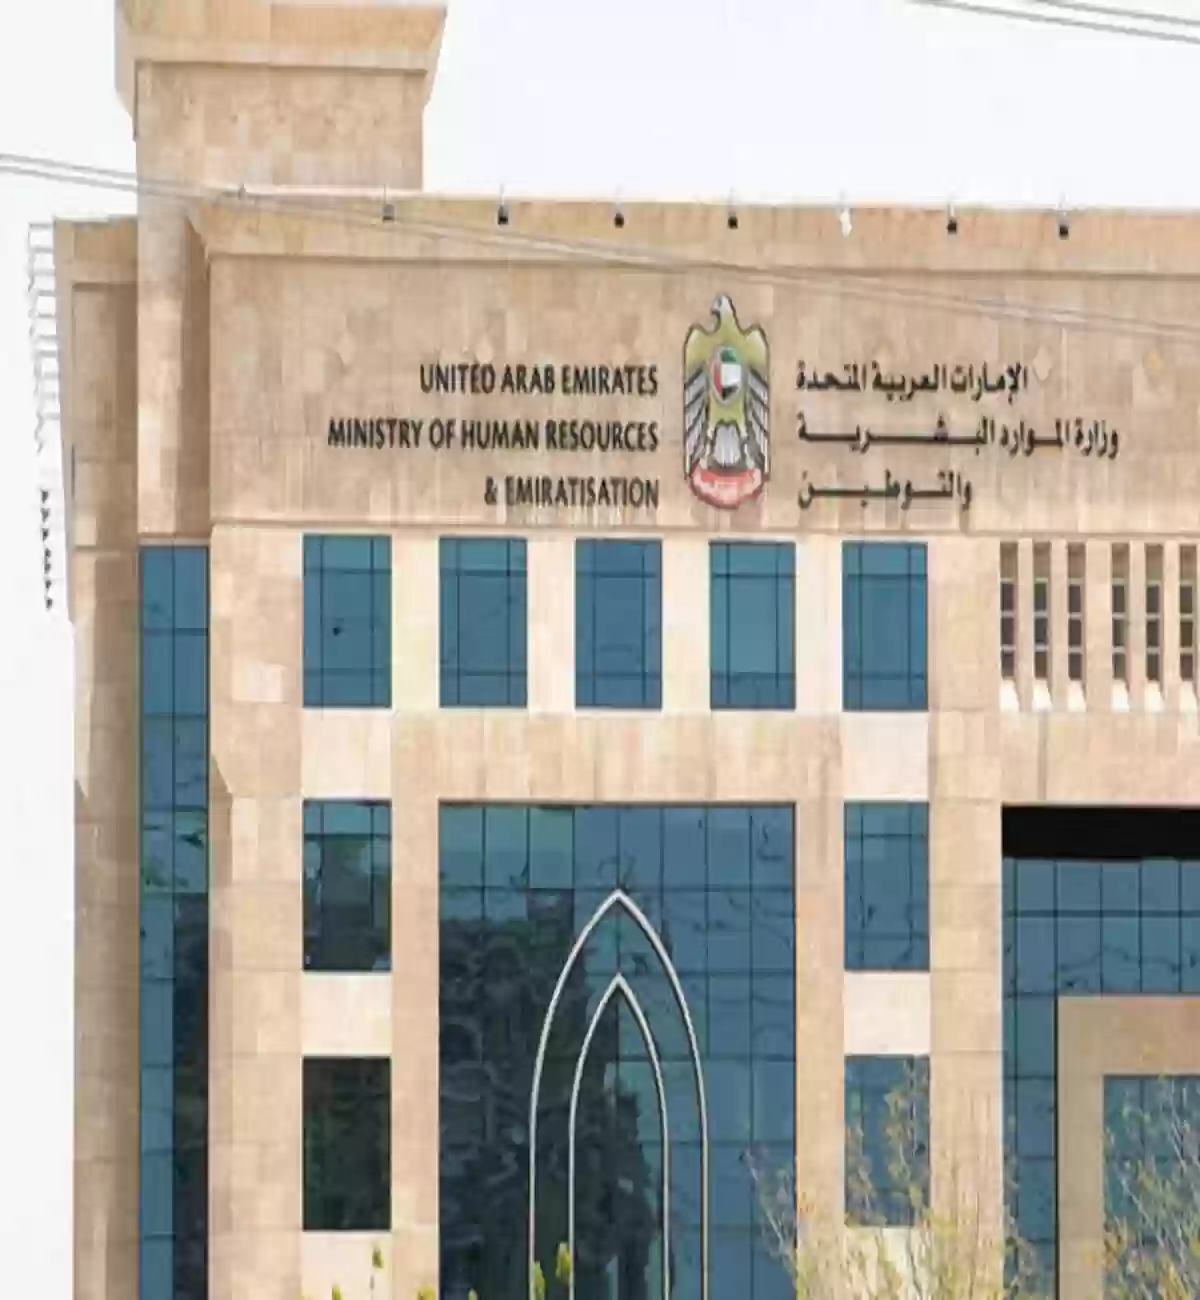 وزارة الموارد البشرية الإماراتية 